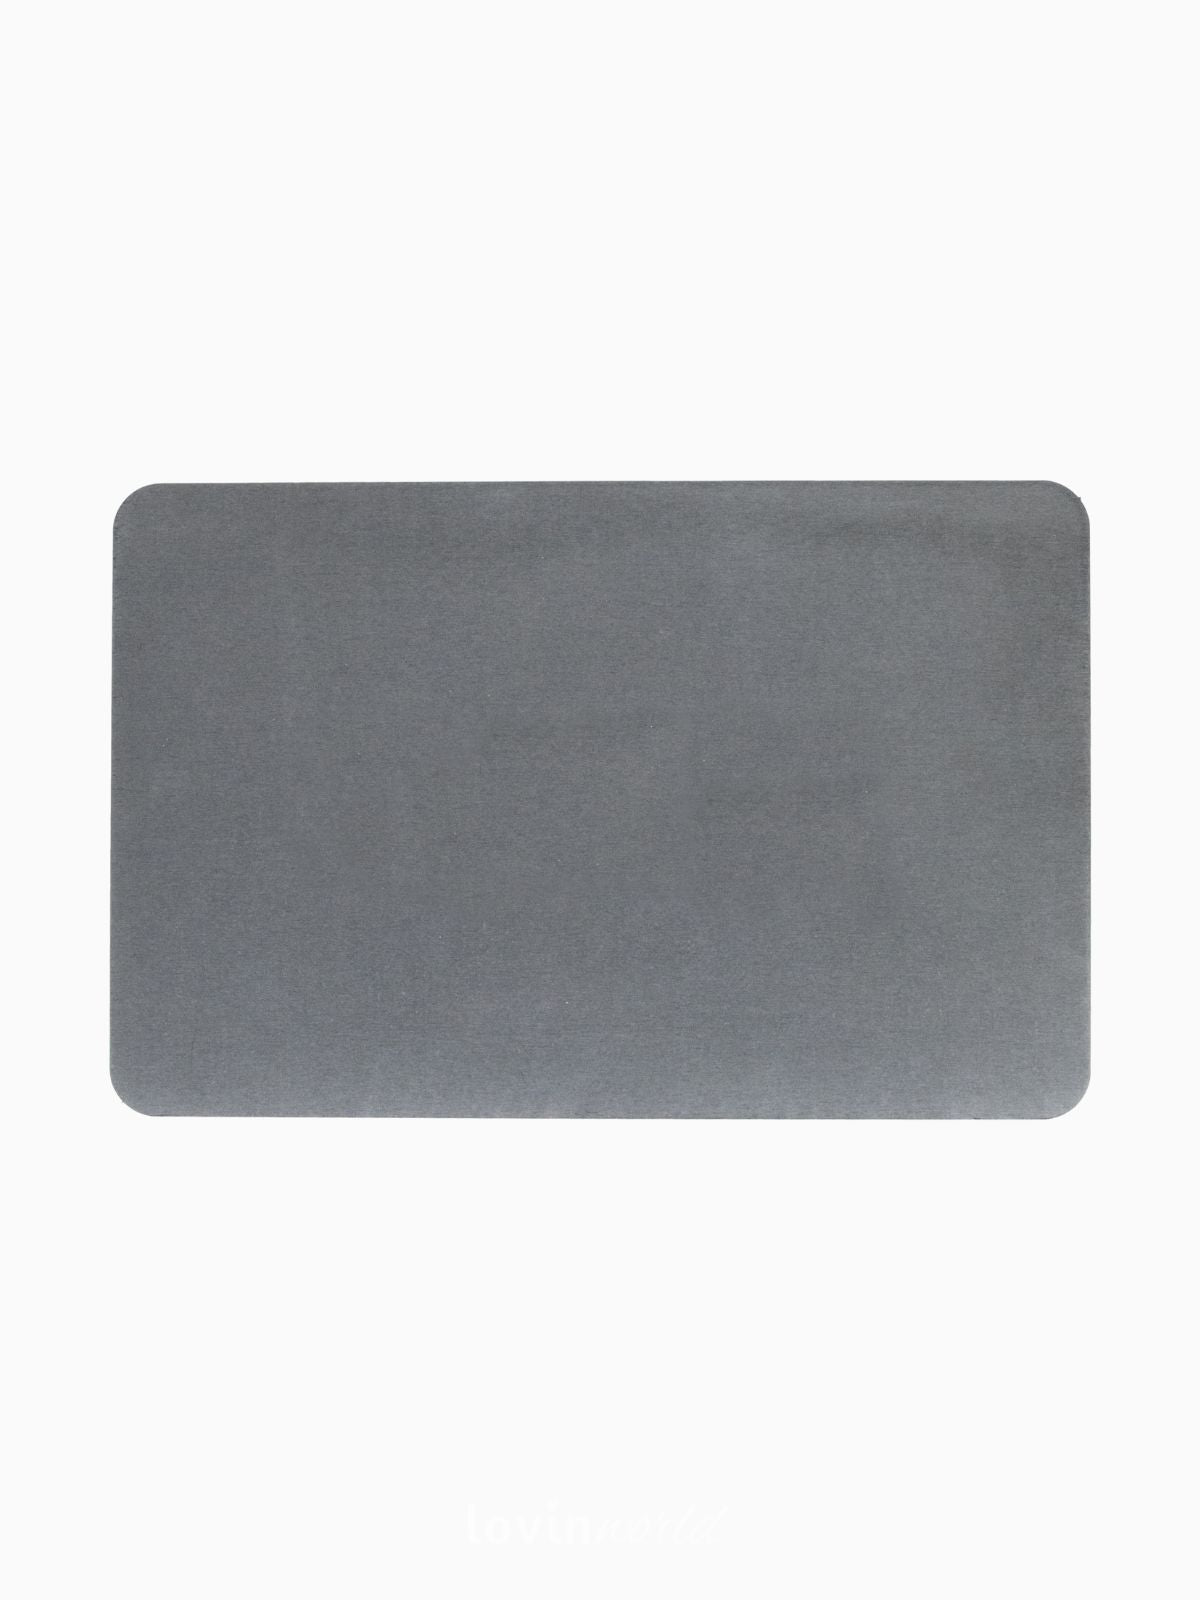 Tappeto da bagno antiscivolo in colore grigio 60x30 cm.-1